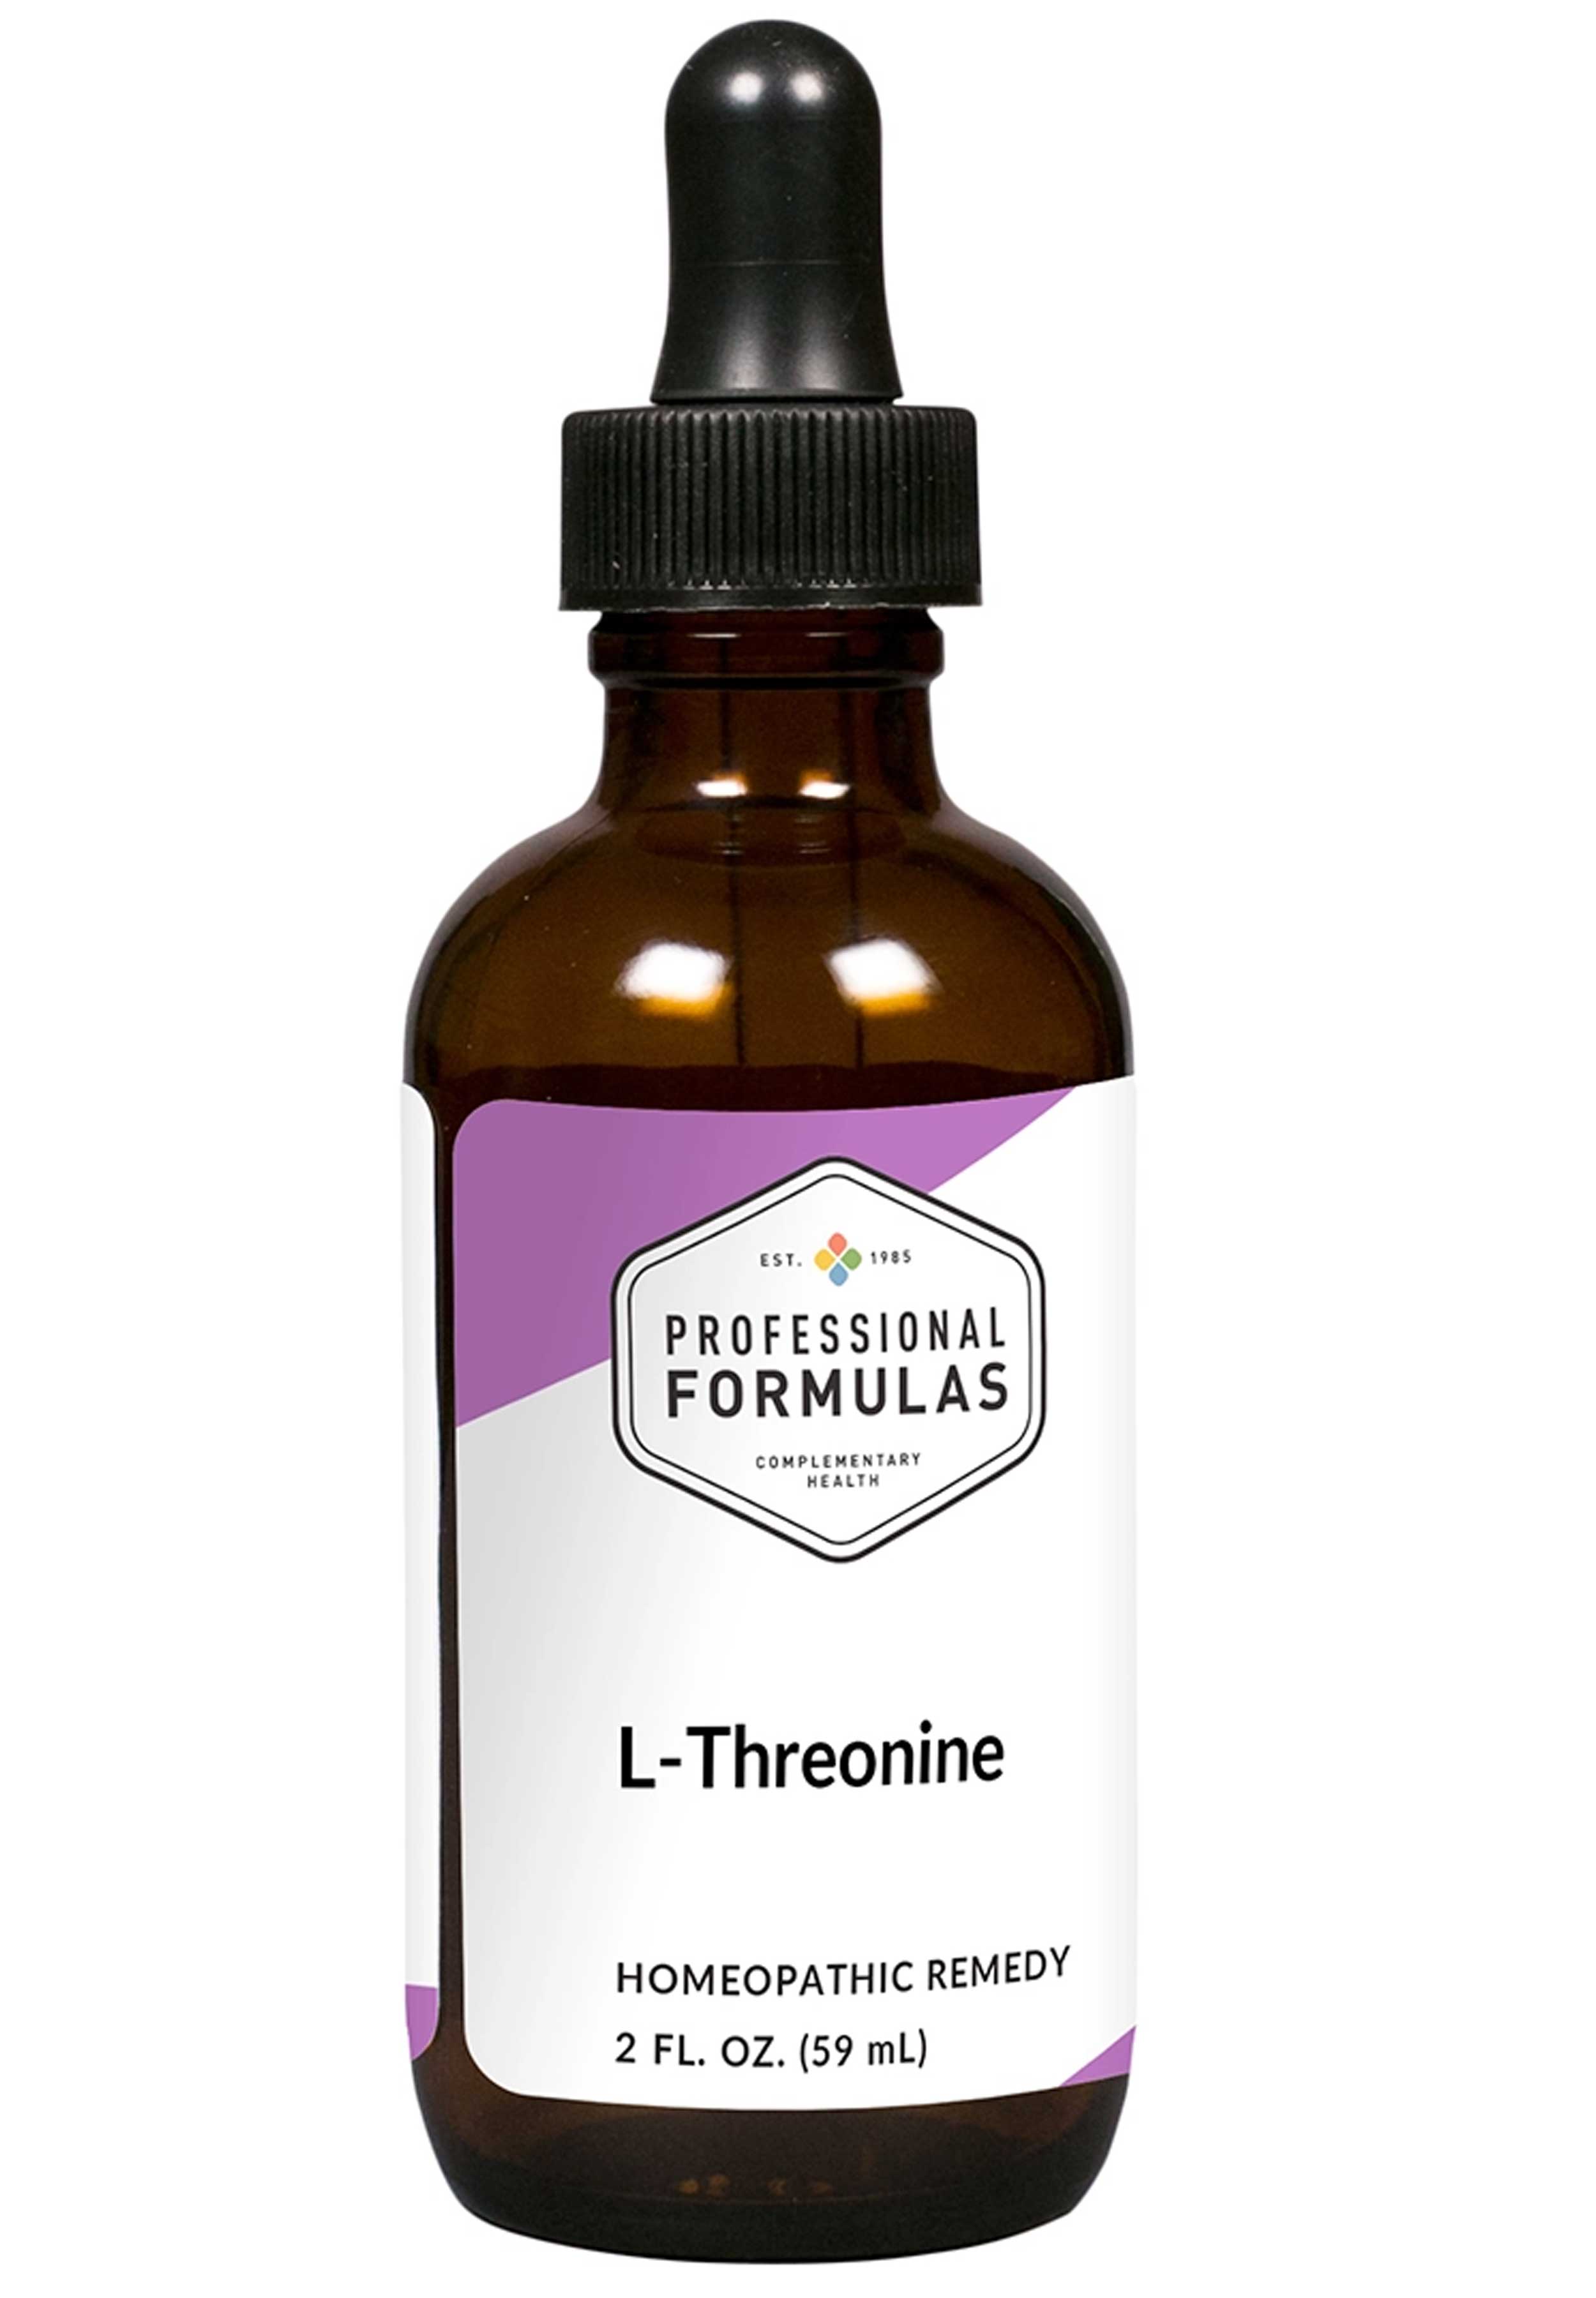 Professional Formulas L-Threonine (4x,7x,12x)